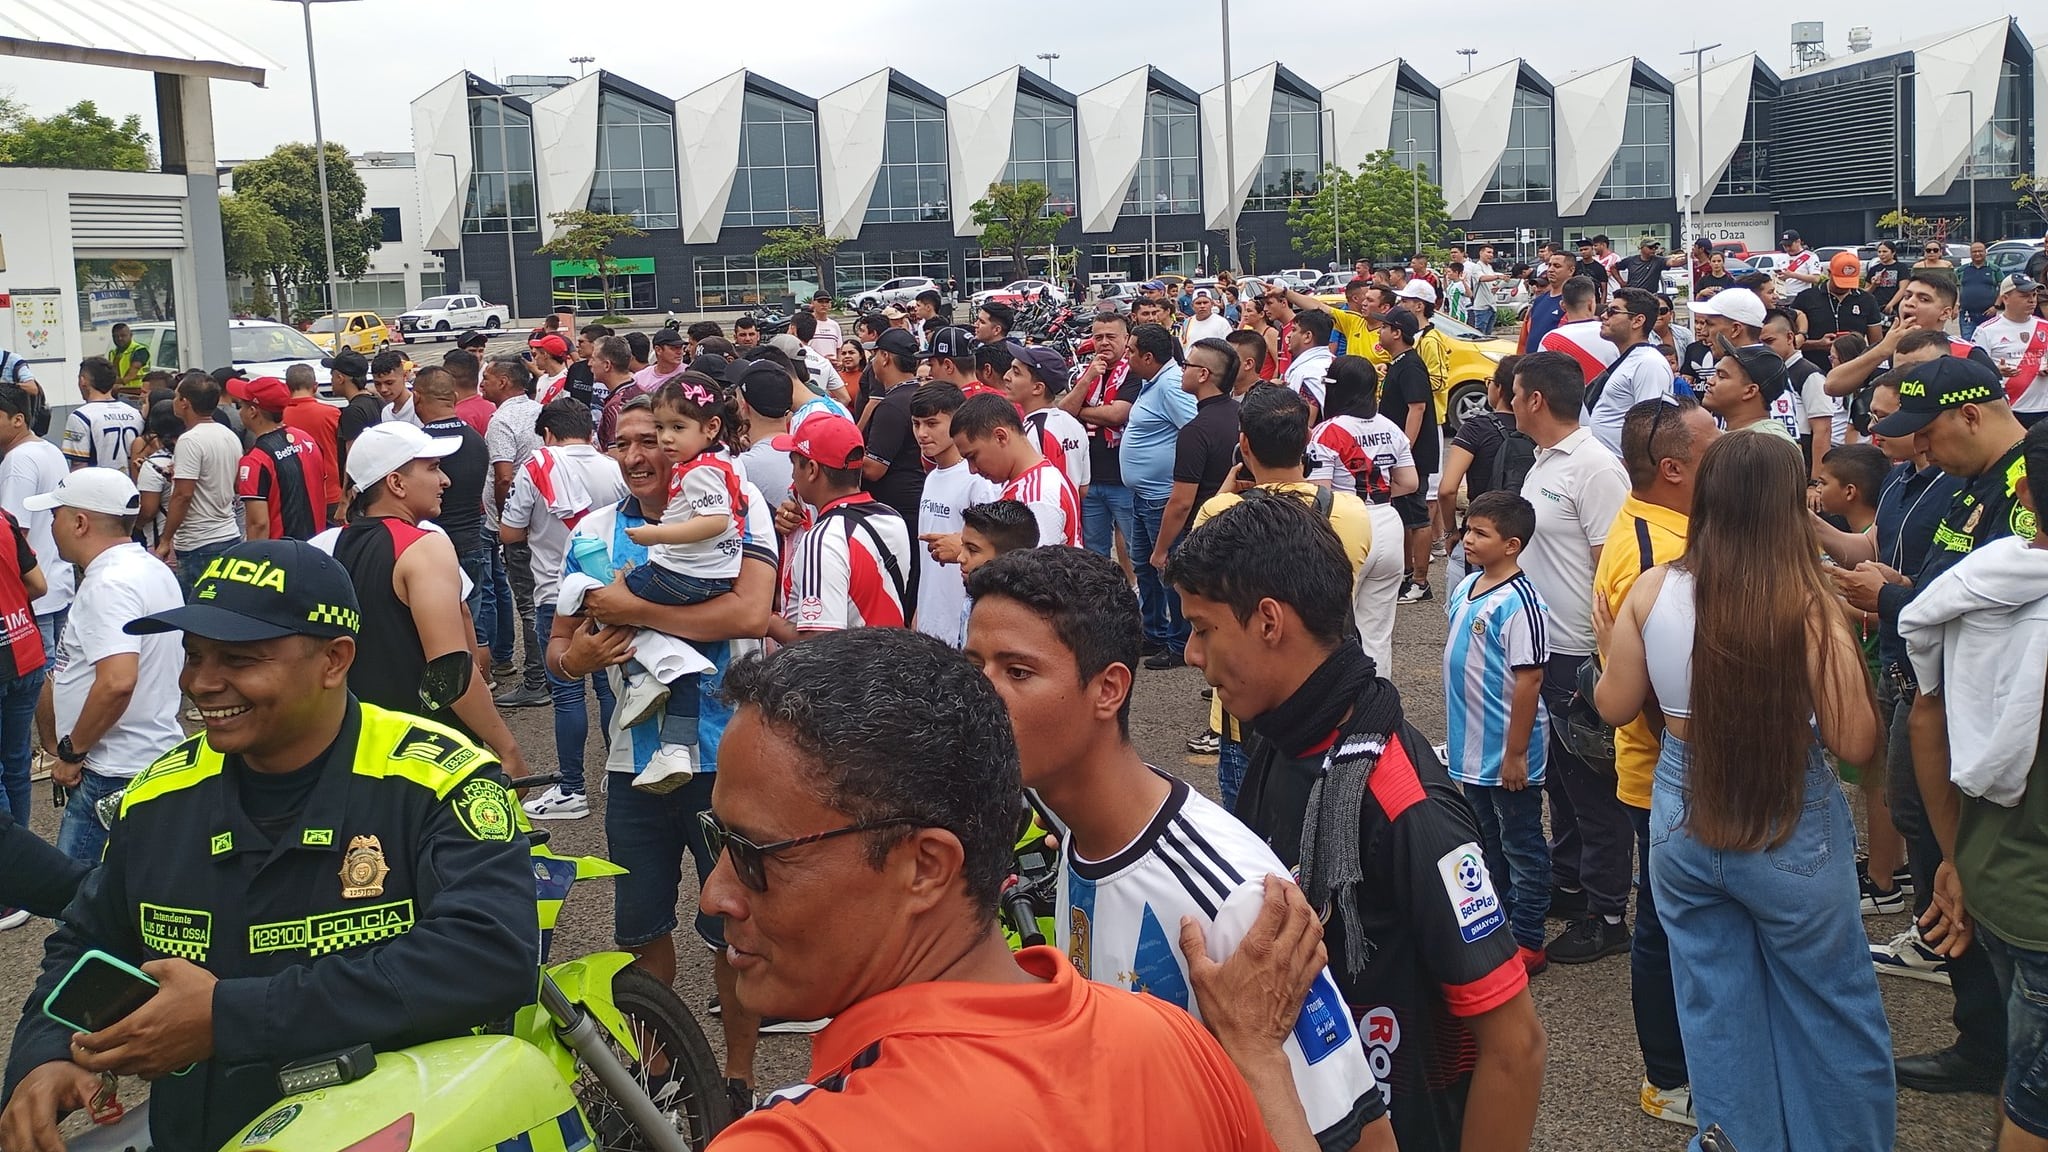 Locura total en recibimiento masivo a River Plate en Colombia en donde pareciera local